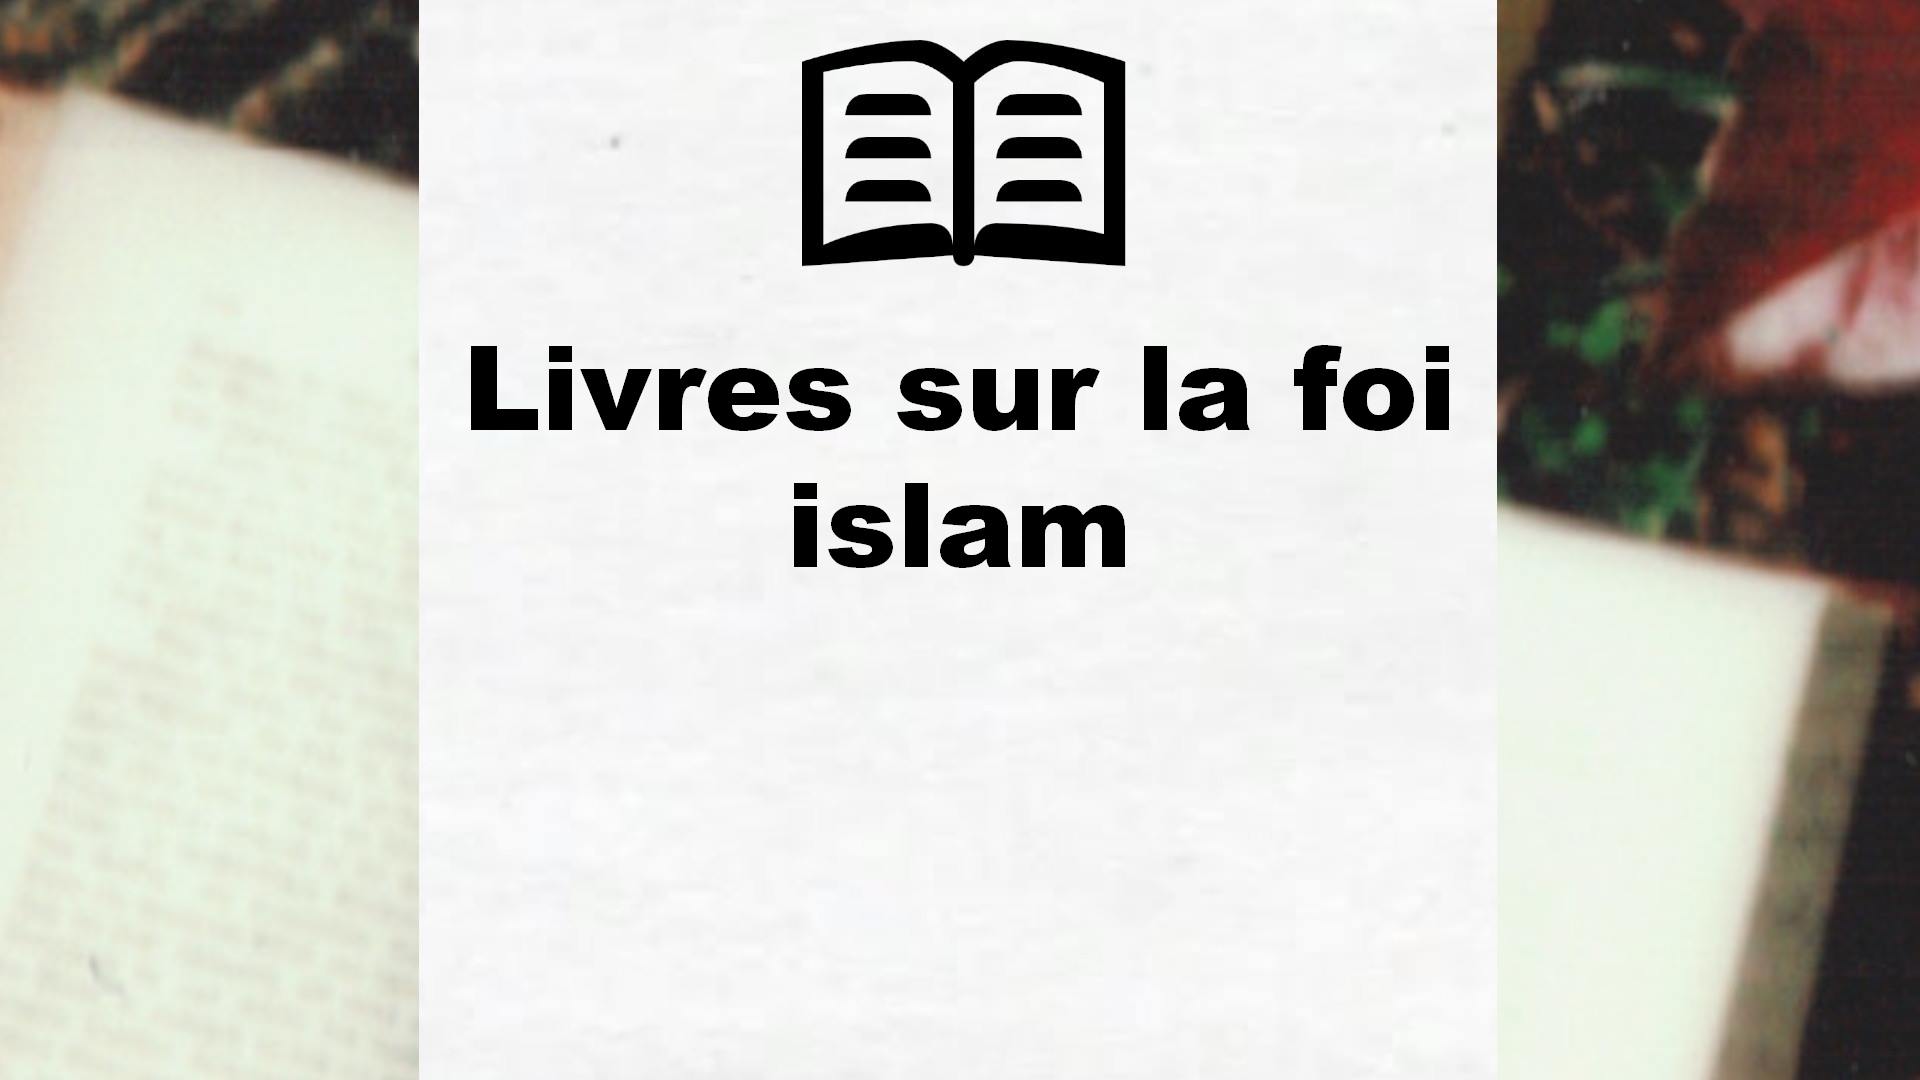 Livres sur la foi islam